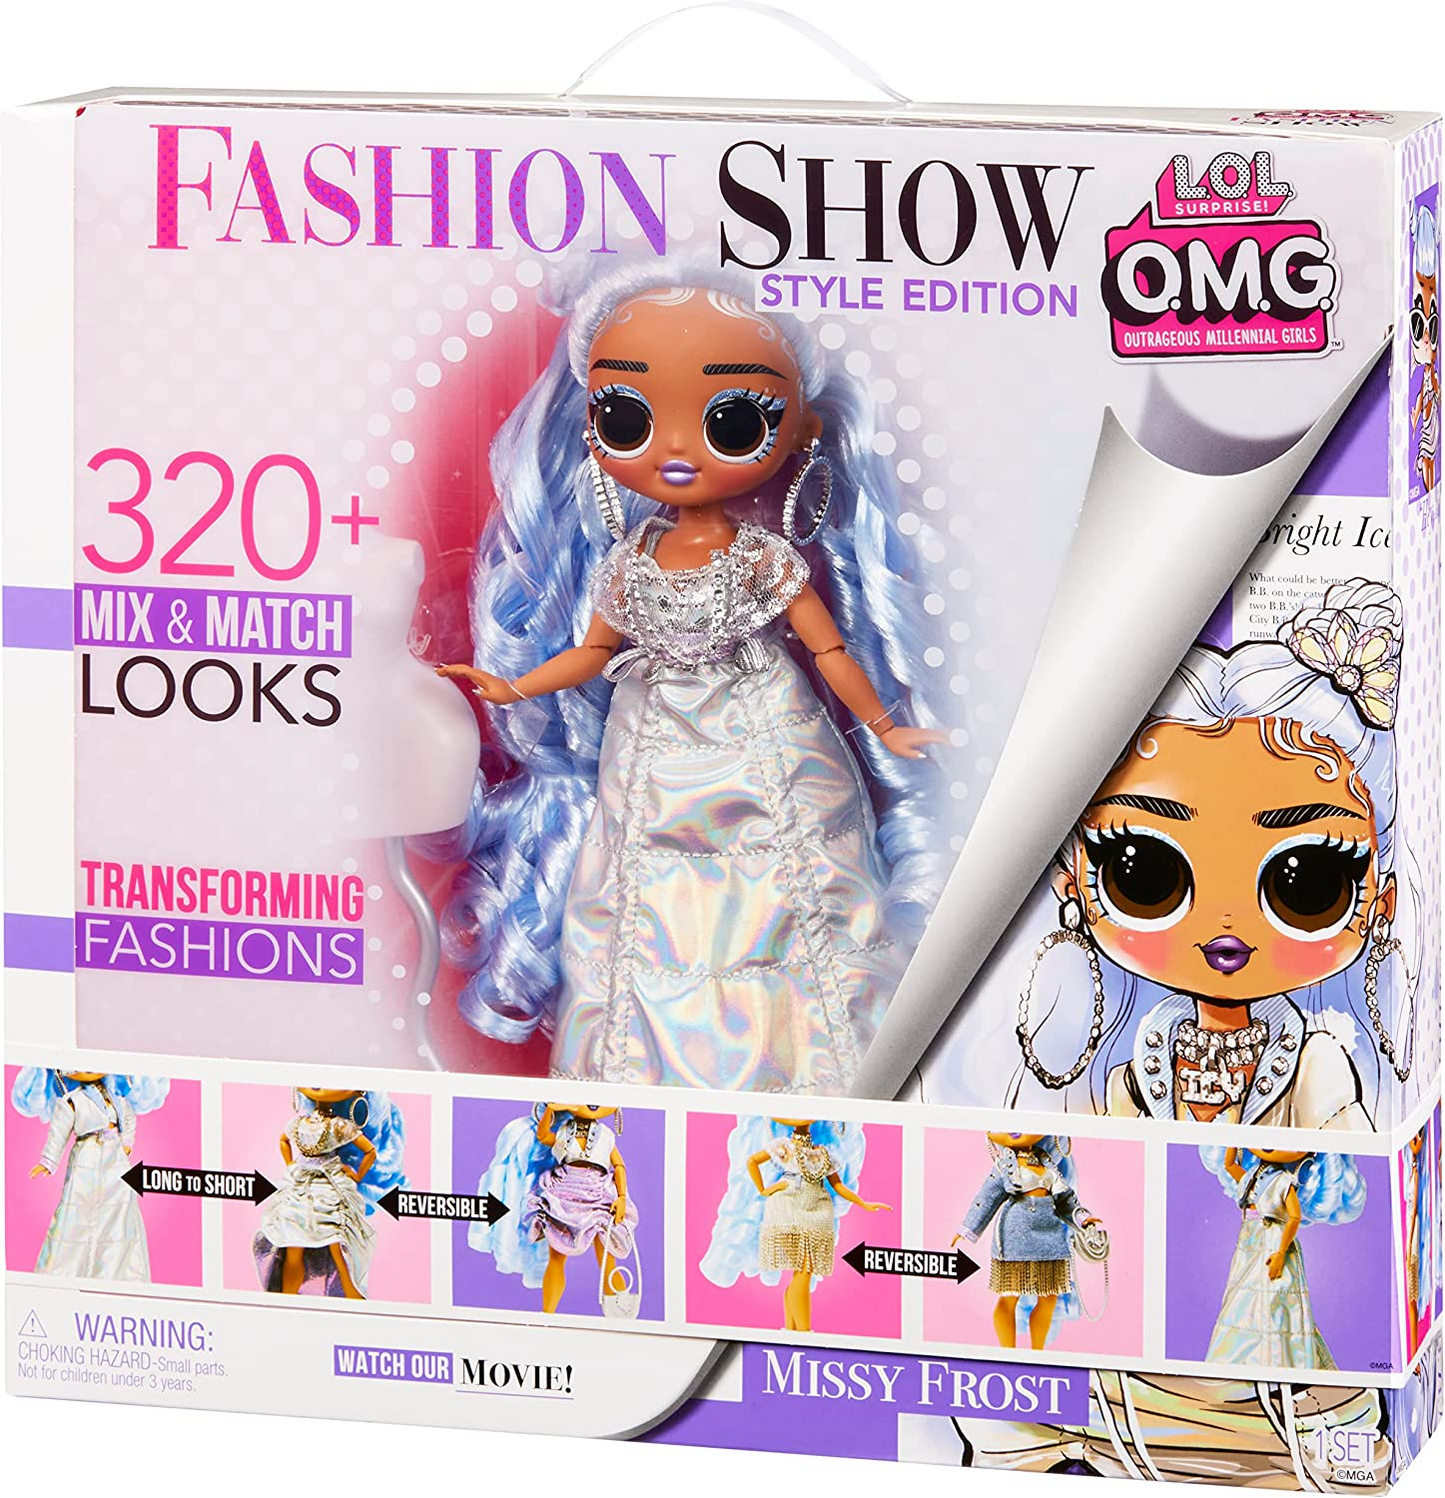 L.O.L. Surprise!  Bonecas OMG Fashion Show Style Edition - Missy Frost - Boneca de 10"/25 cm com mais de 320 looks de moda - Inclui roupas transformadoras, acessórios e muito mais - Colecionável - Para crianças de 4 anos ou mais